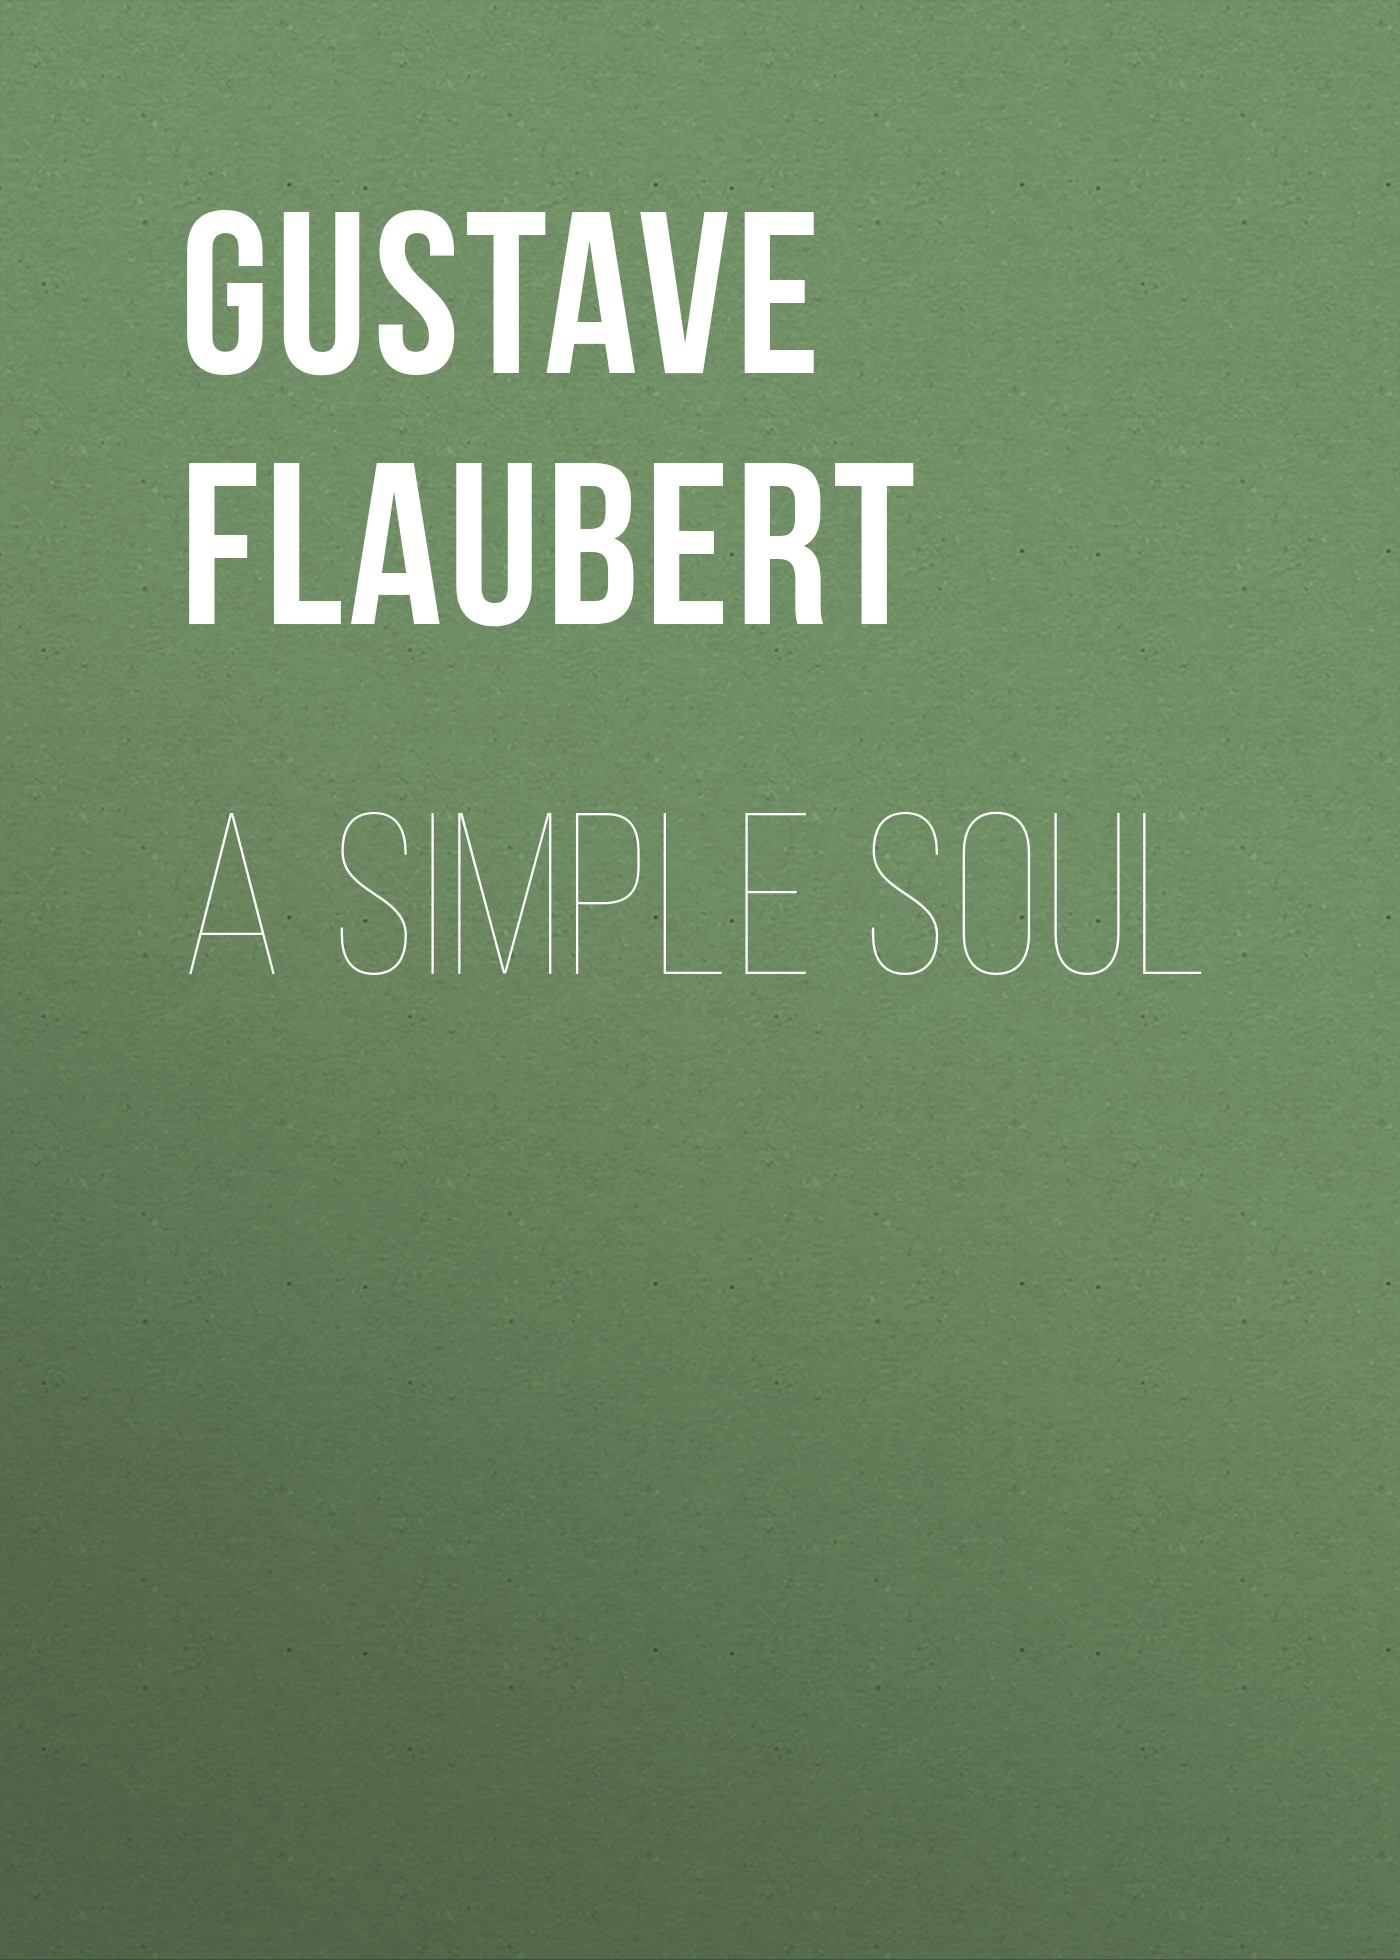 Книга A Simple Soul из серии , созданная Gustave Flaubert, может относится к жанру Зарубежная старинная литература, Зарубежная классика. Стоимость электронной книги A Simple Soul с идентификатором 25202399 составляет 0 руб.